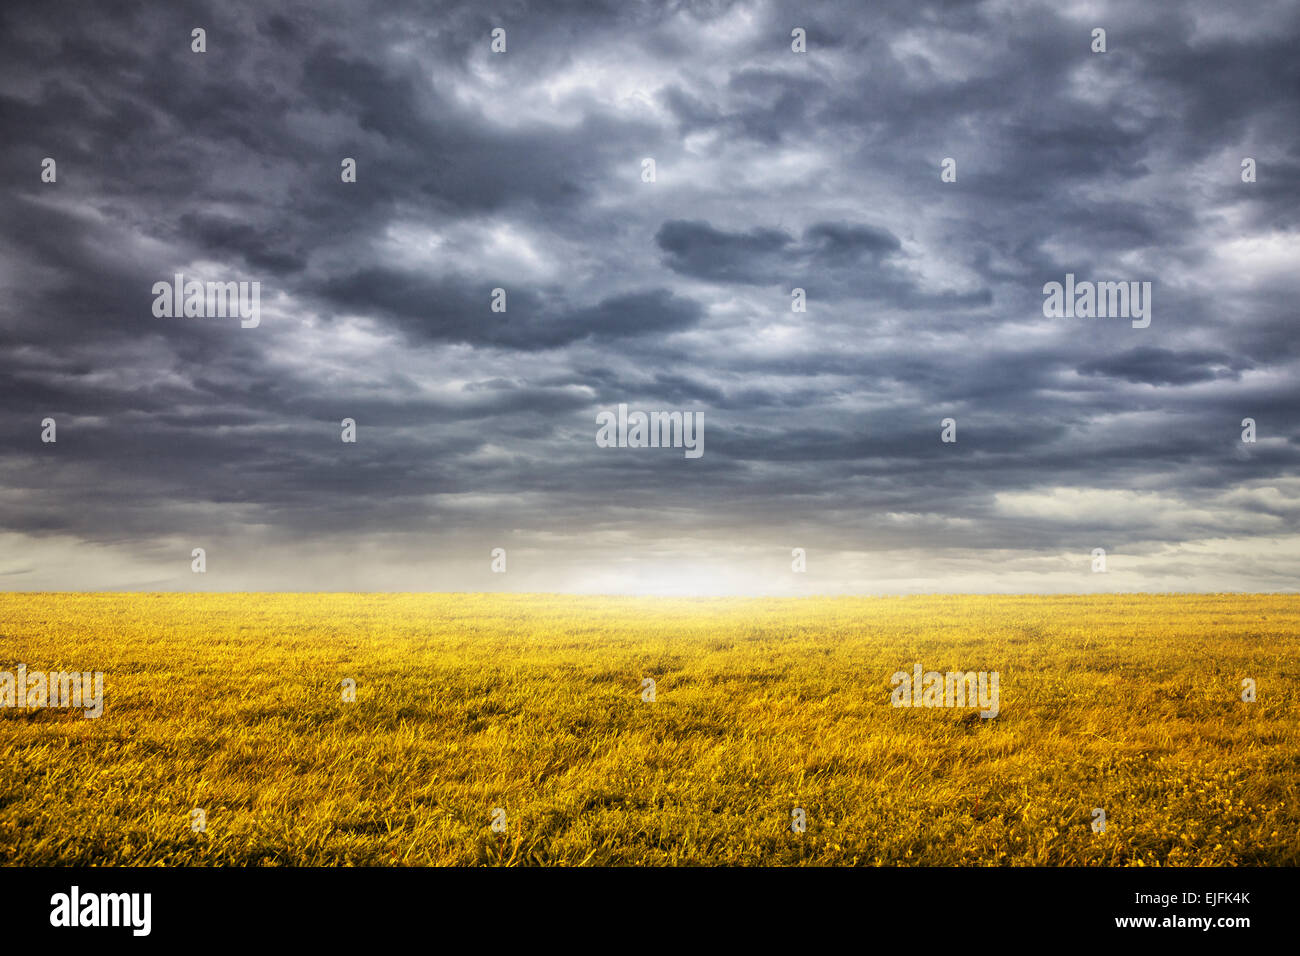 Bereich mit gelben Grases am bewölkten dramatischer Himmelshintergrund Stockfoto